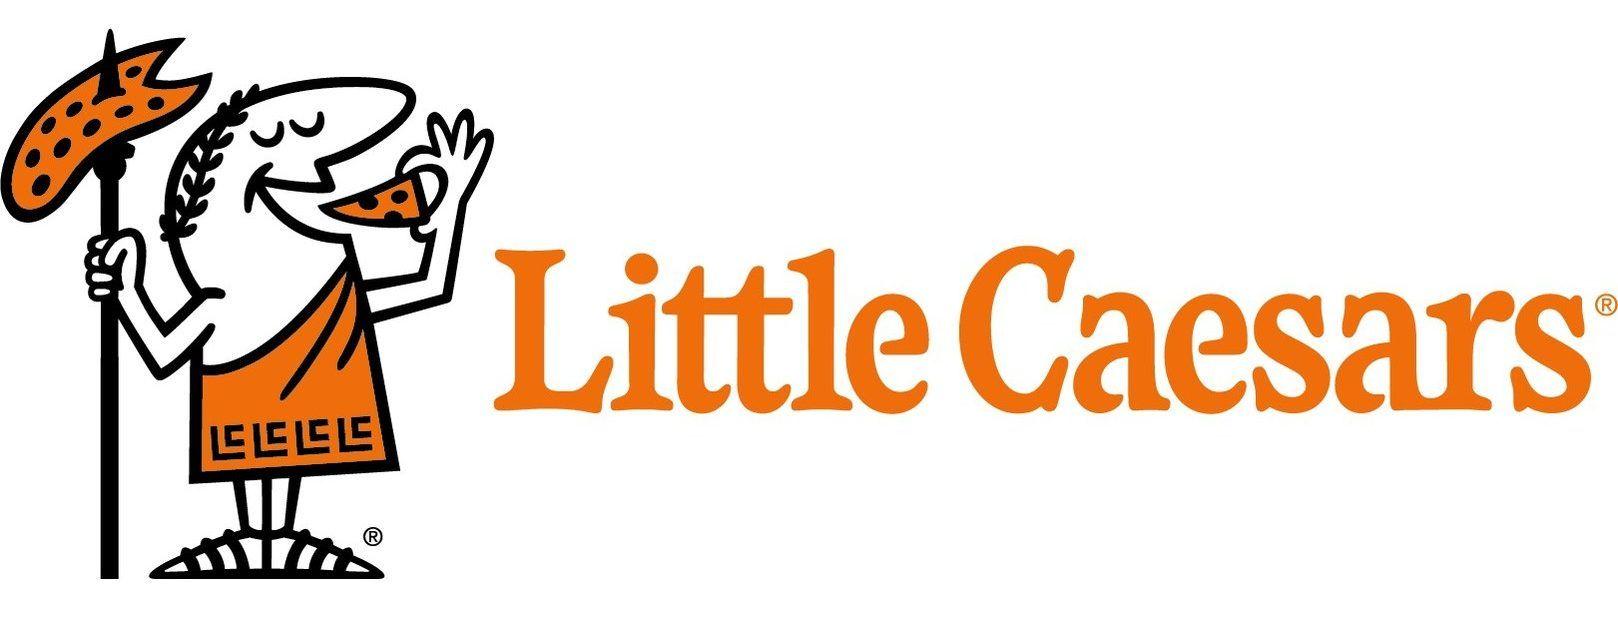 Little Caesars Pizza Logo - Little Caesars Pizza Logo